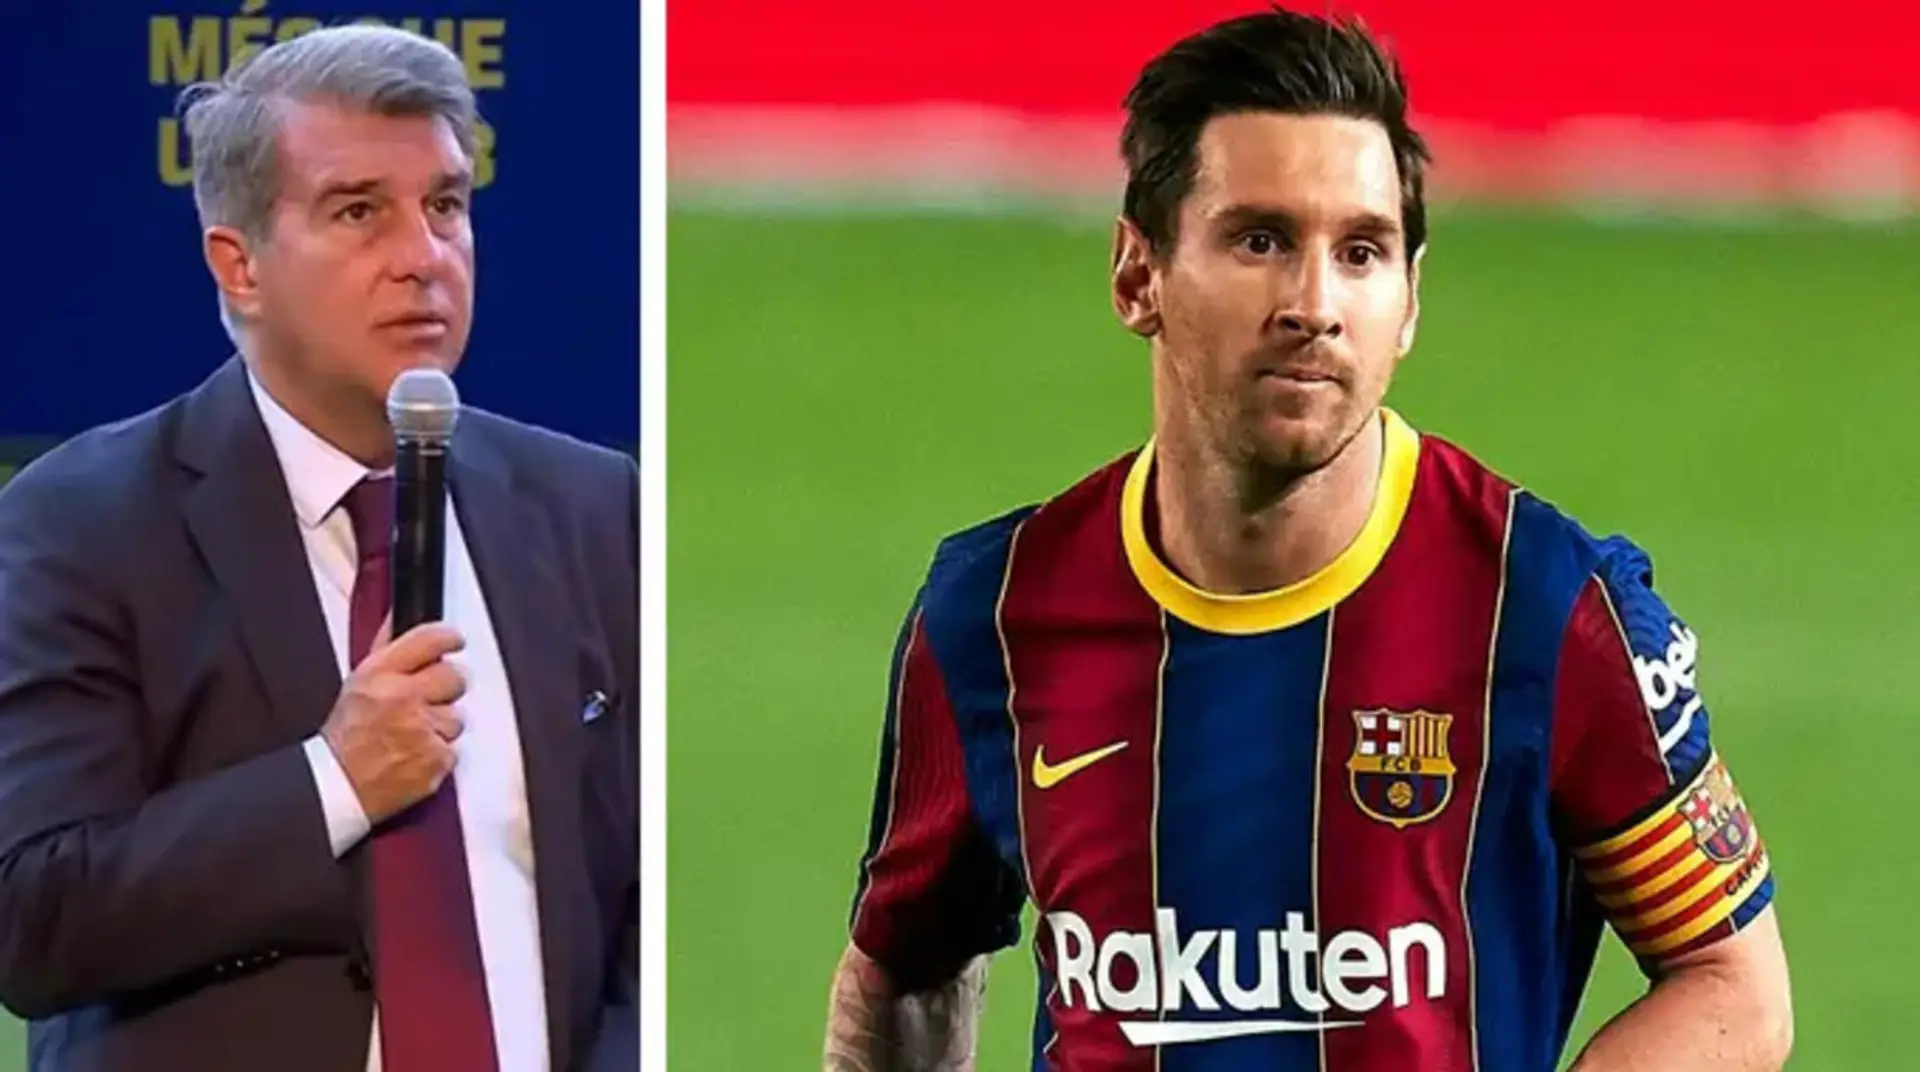 'A su debido tiempo, conoceréis lo que todos estamos esperando': Laporta da las últimas noticias optimísticas sobre Messi